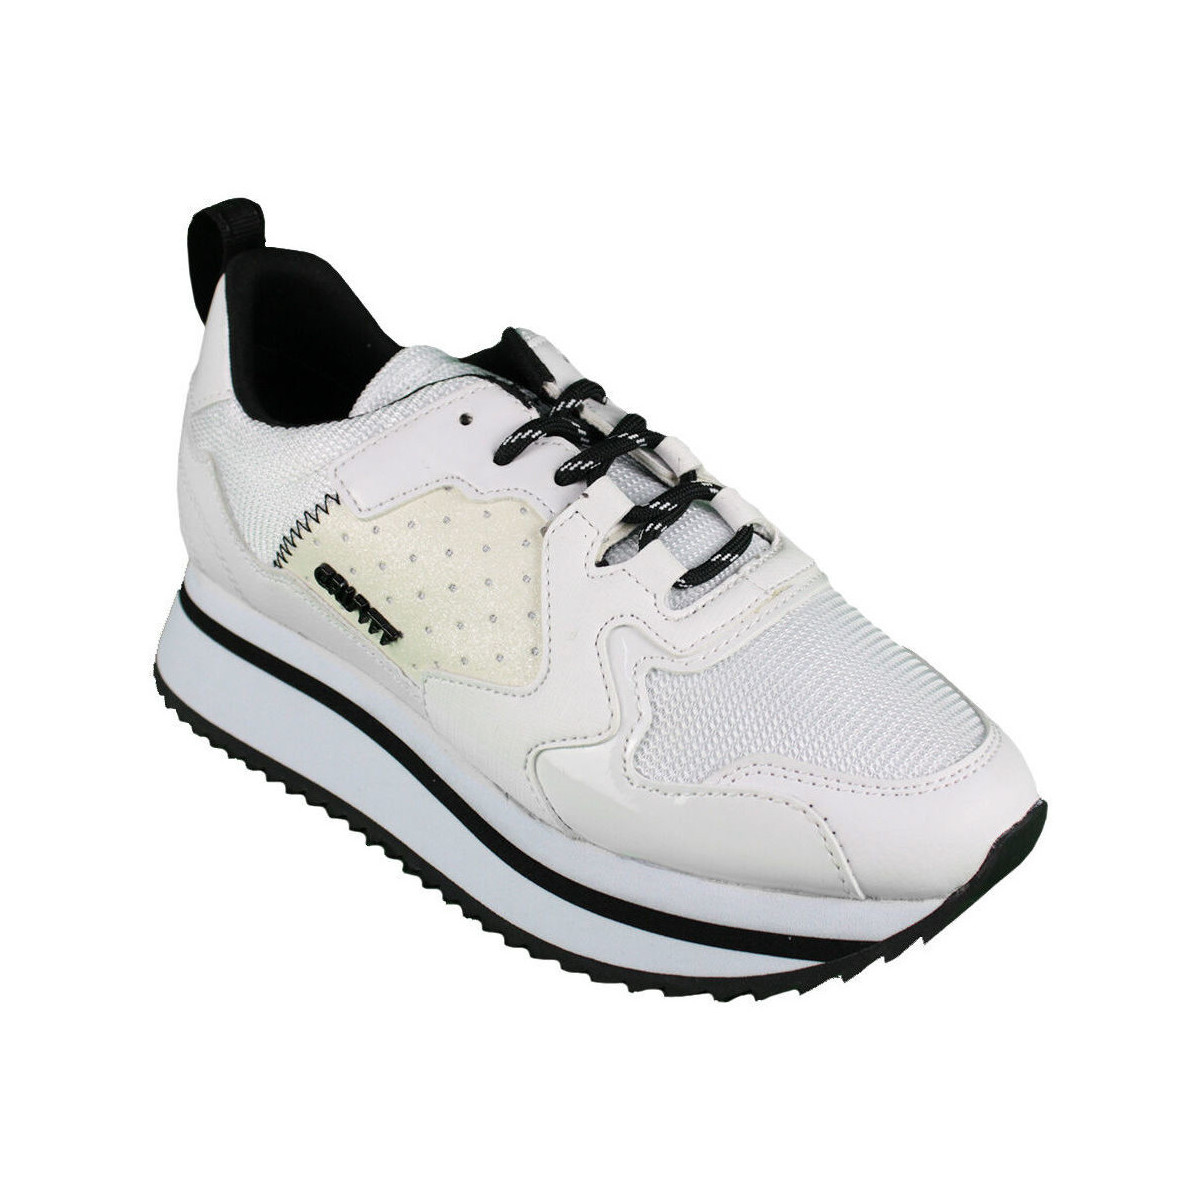 Παπούτσια Γυναίκα Sneakers Cruyff Blaze CC8301203 510 White Άσπρο